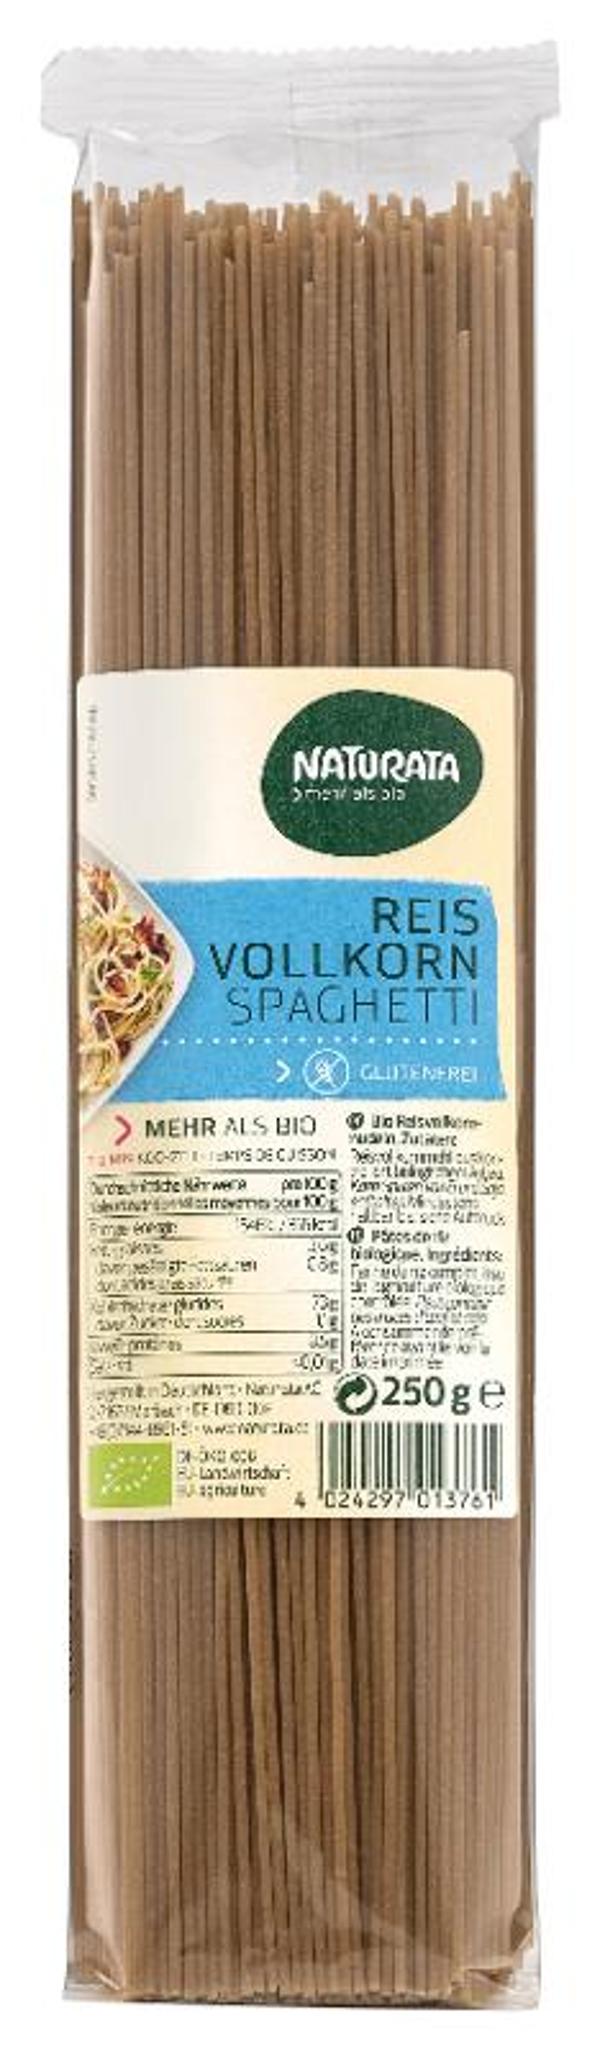 Produktfoto zu Naturata Vollkorn Reis Spaghetti - 250g